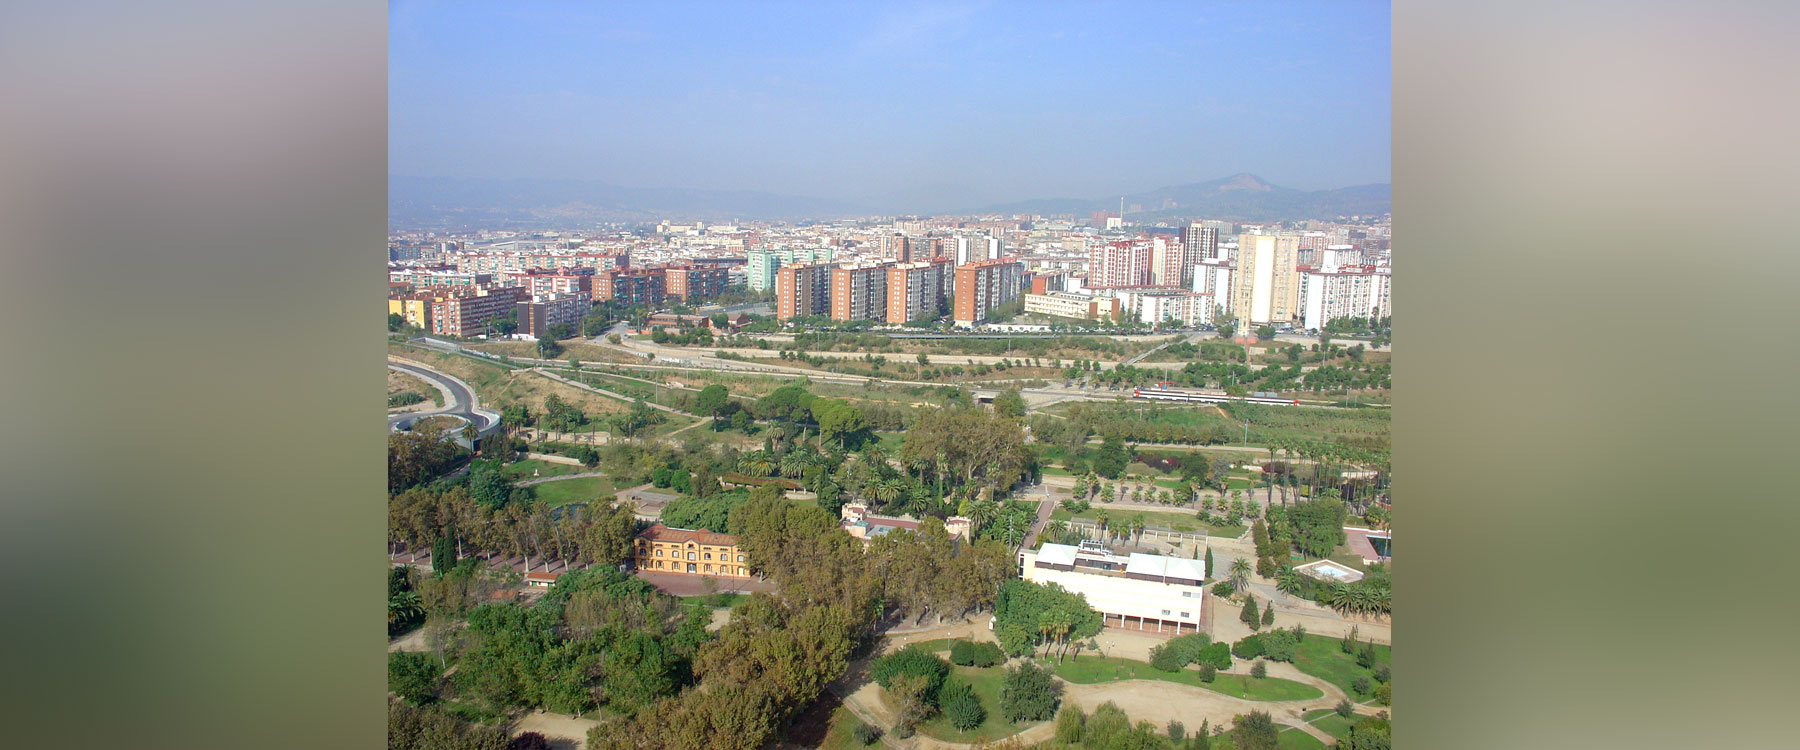 Parque Can Mercader - Cornellà de Llobregat